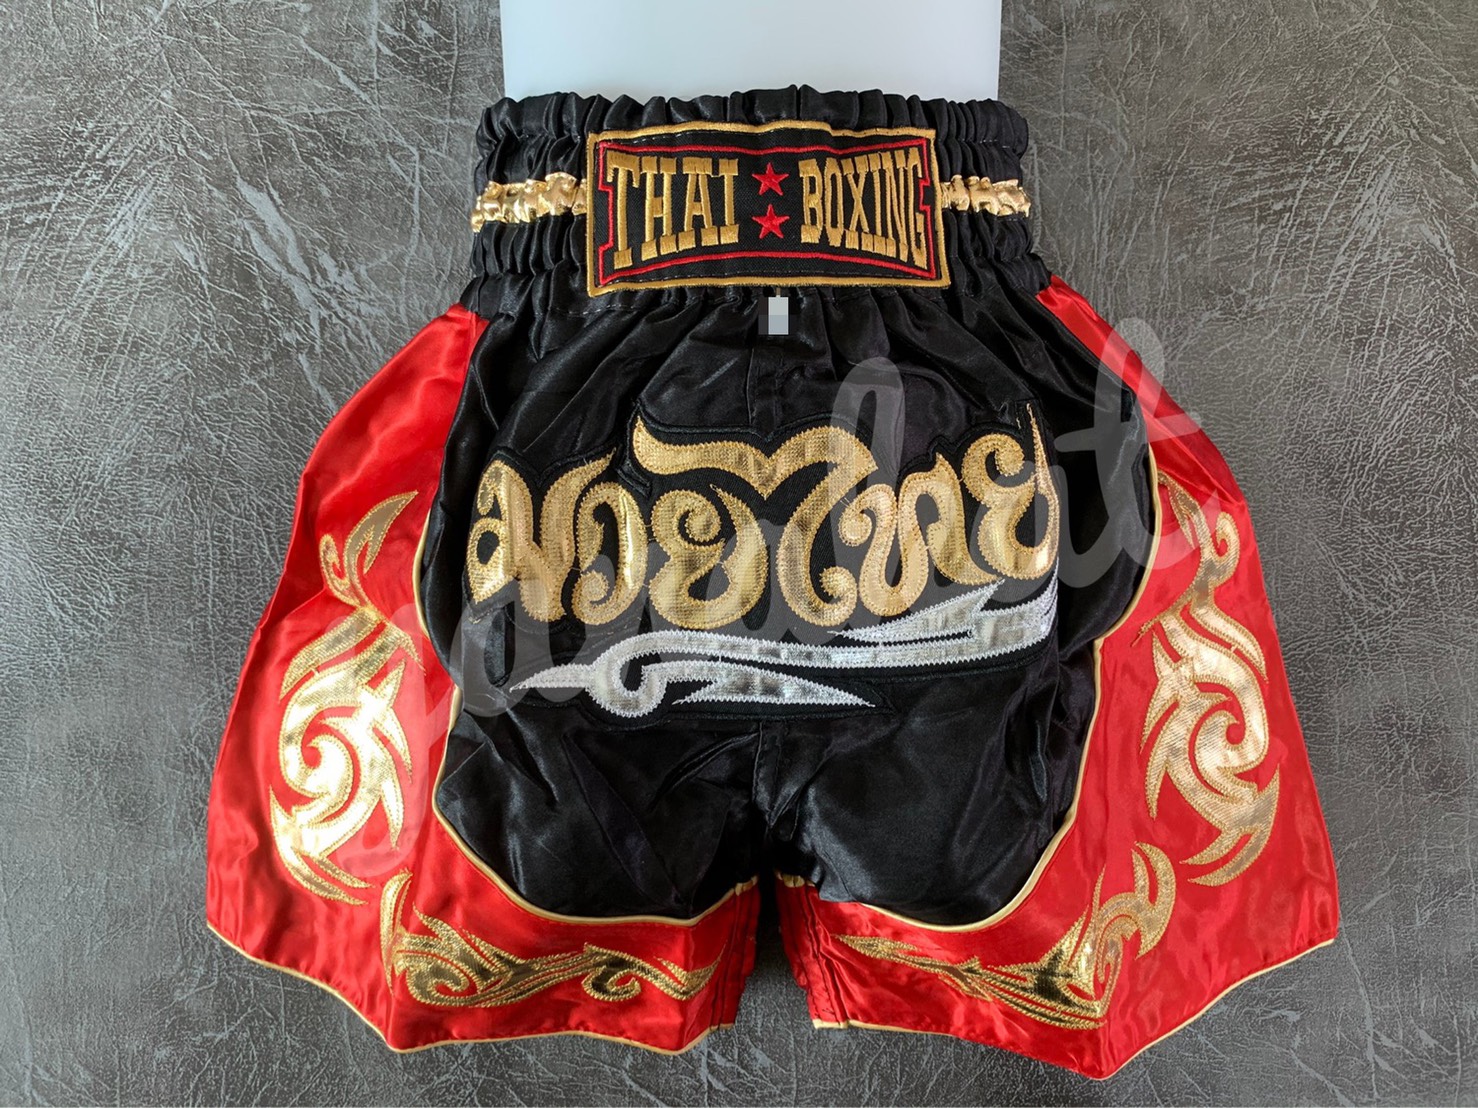 กางเกงมวย กางเกงมวยไทย ปักลายกนกทอง ไซส์ผู้ใหญ่ ผ้าซาติน Kick Boxing Shorts ไซส์ M-XXXL สีแดง